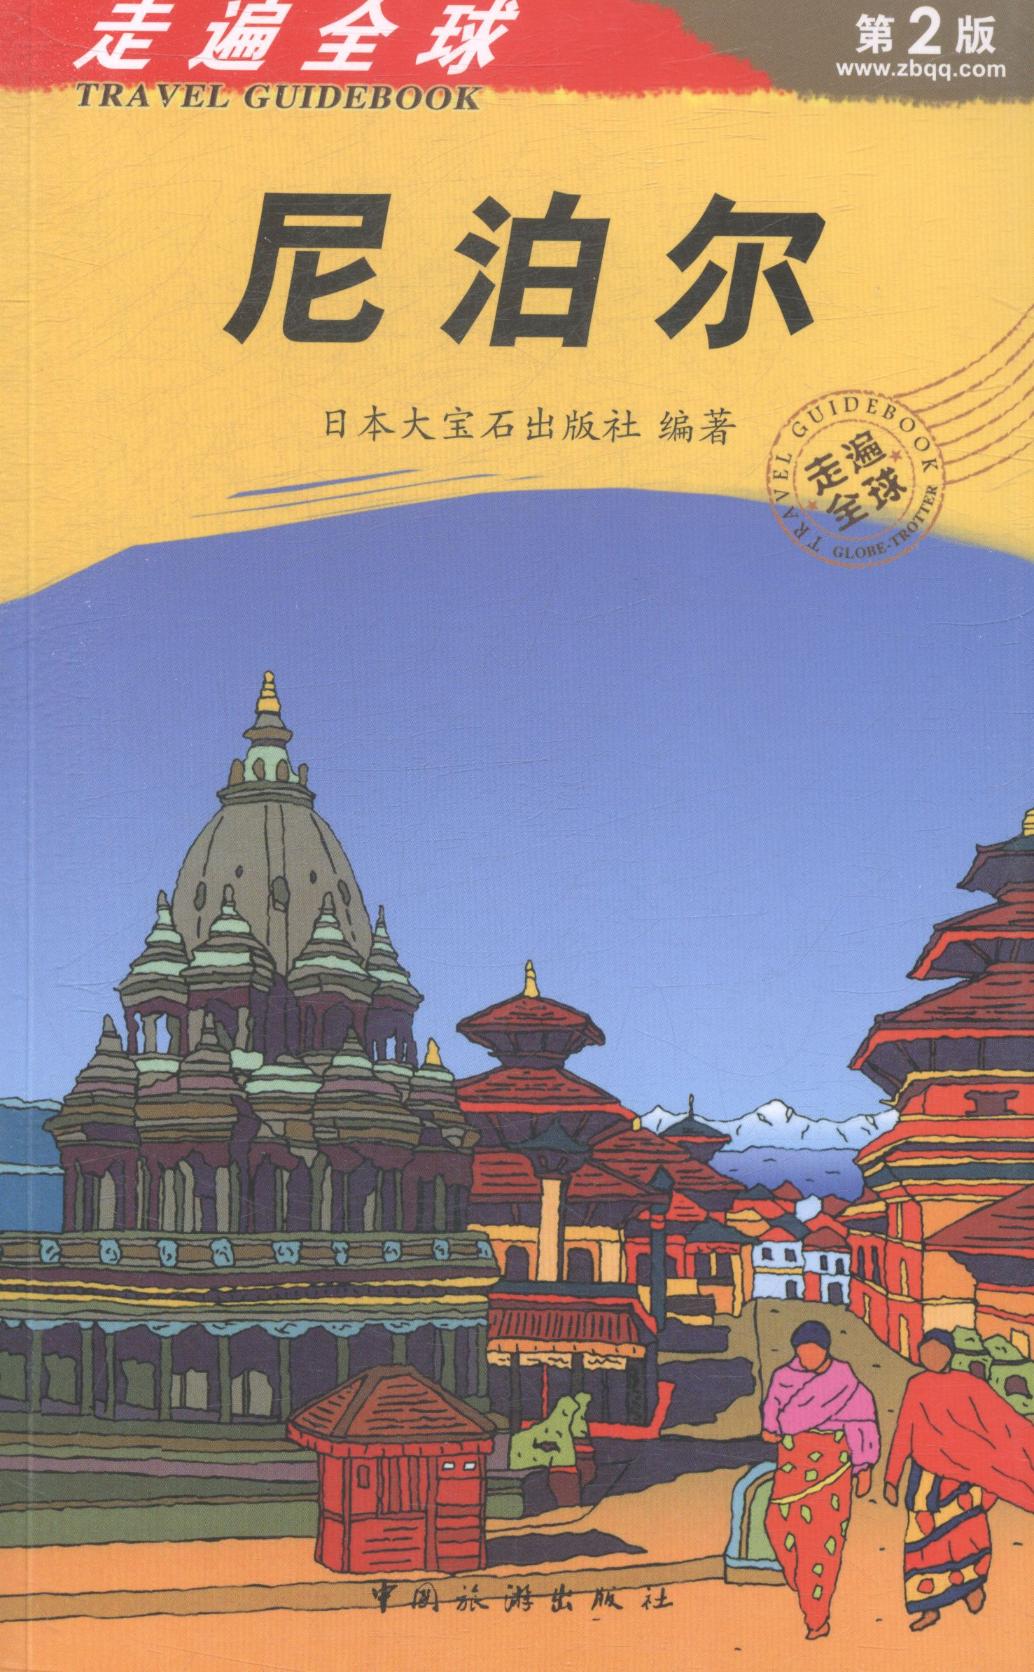 尼泊尔-走遍-第2版 日本大宝石出版社  亚洲地图书籍 国家图书馆书店正版